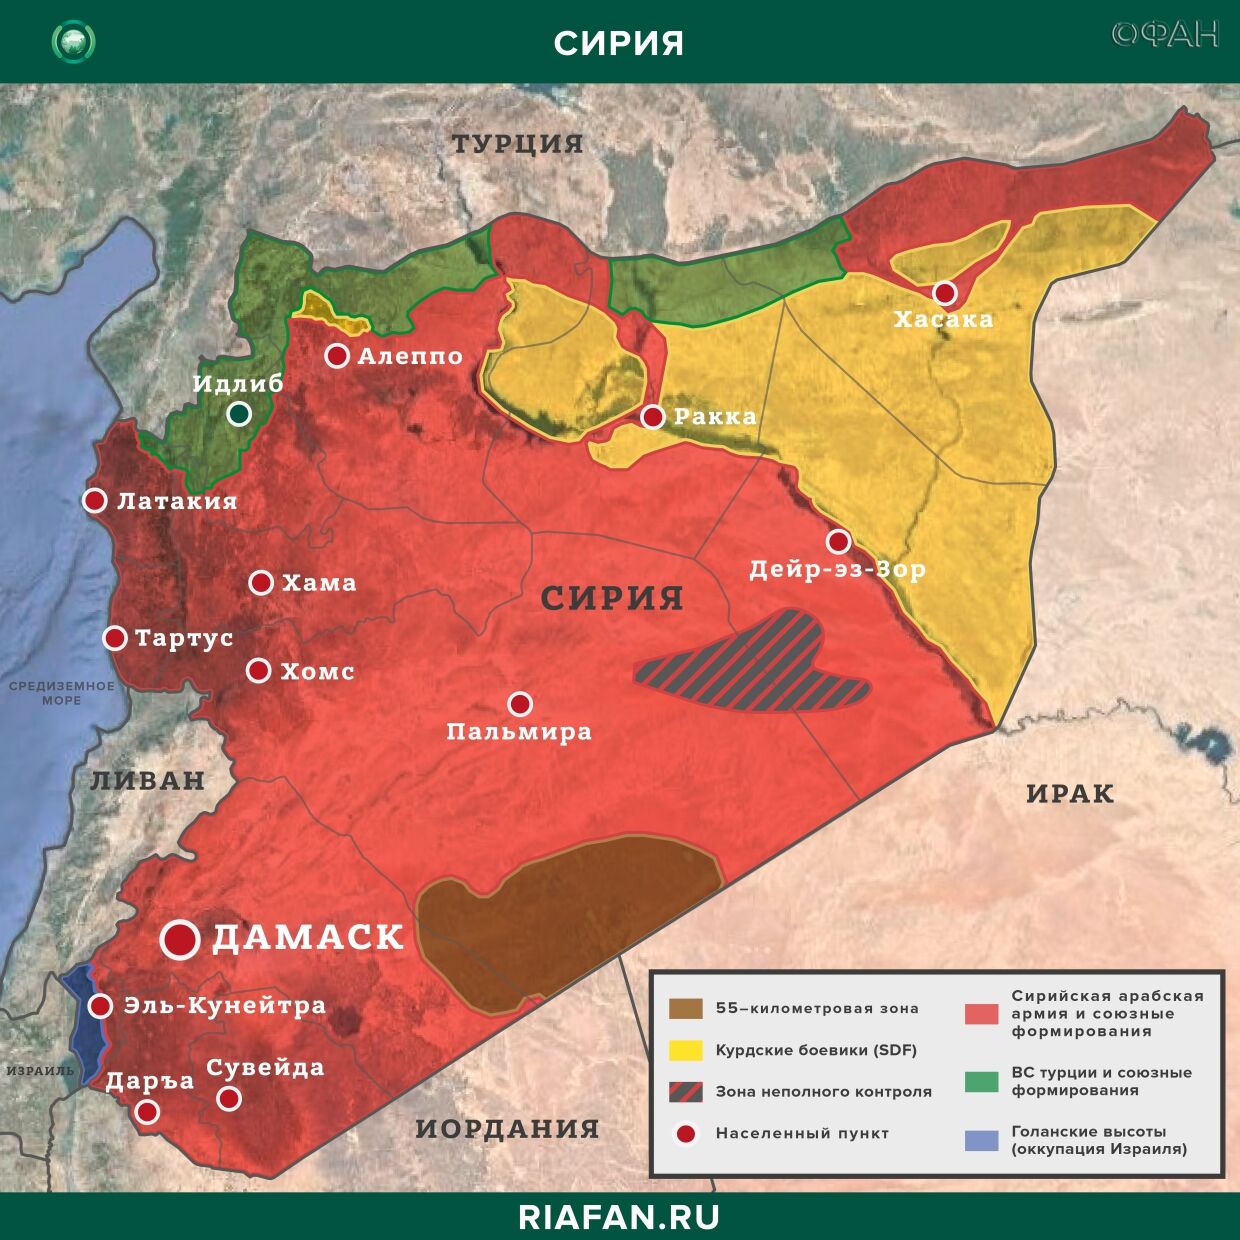 Последние новости Сирии. Сегодня 11 апреля 2020 Сирии, агентство, новостей, террористы, боевиков, действий, террористов, после, Турции, военных, разгрома, провинции, передавал, территории, пытаются, перебраться, результате, Алеппо, турецких, группировки